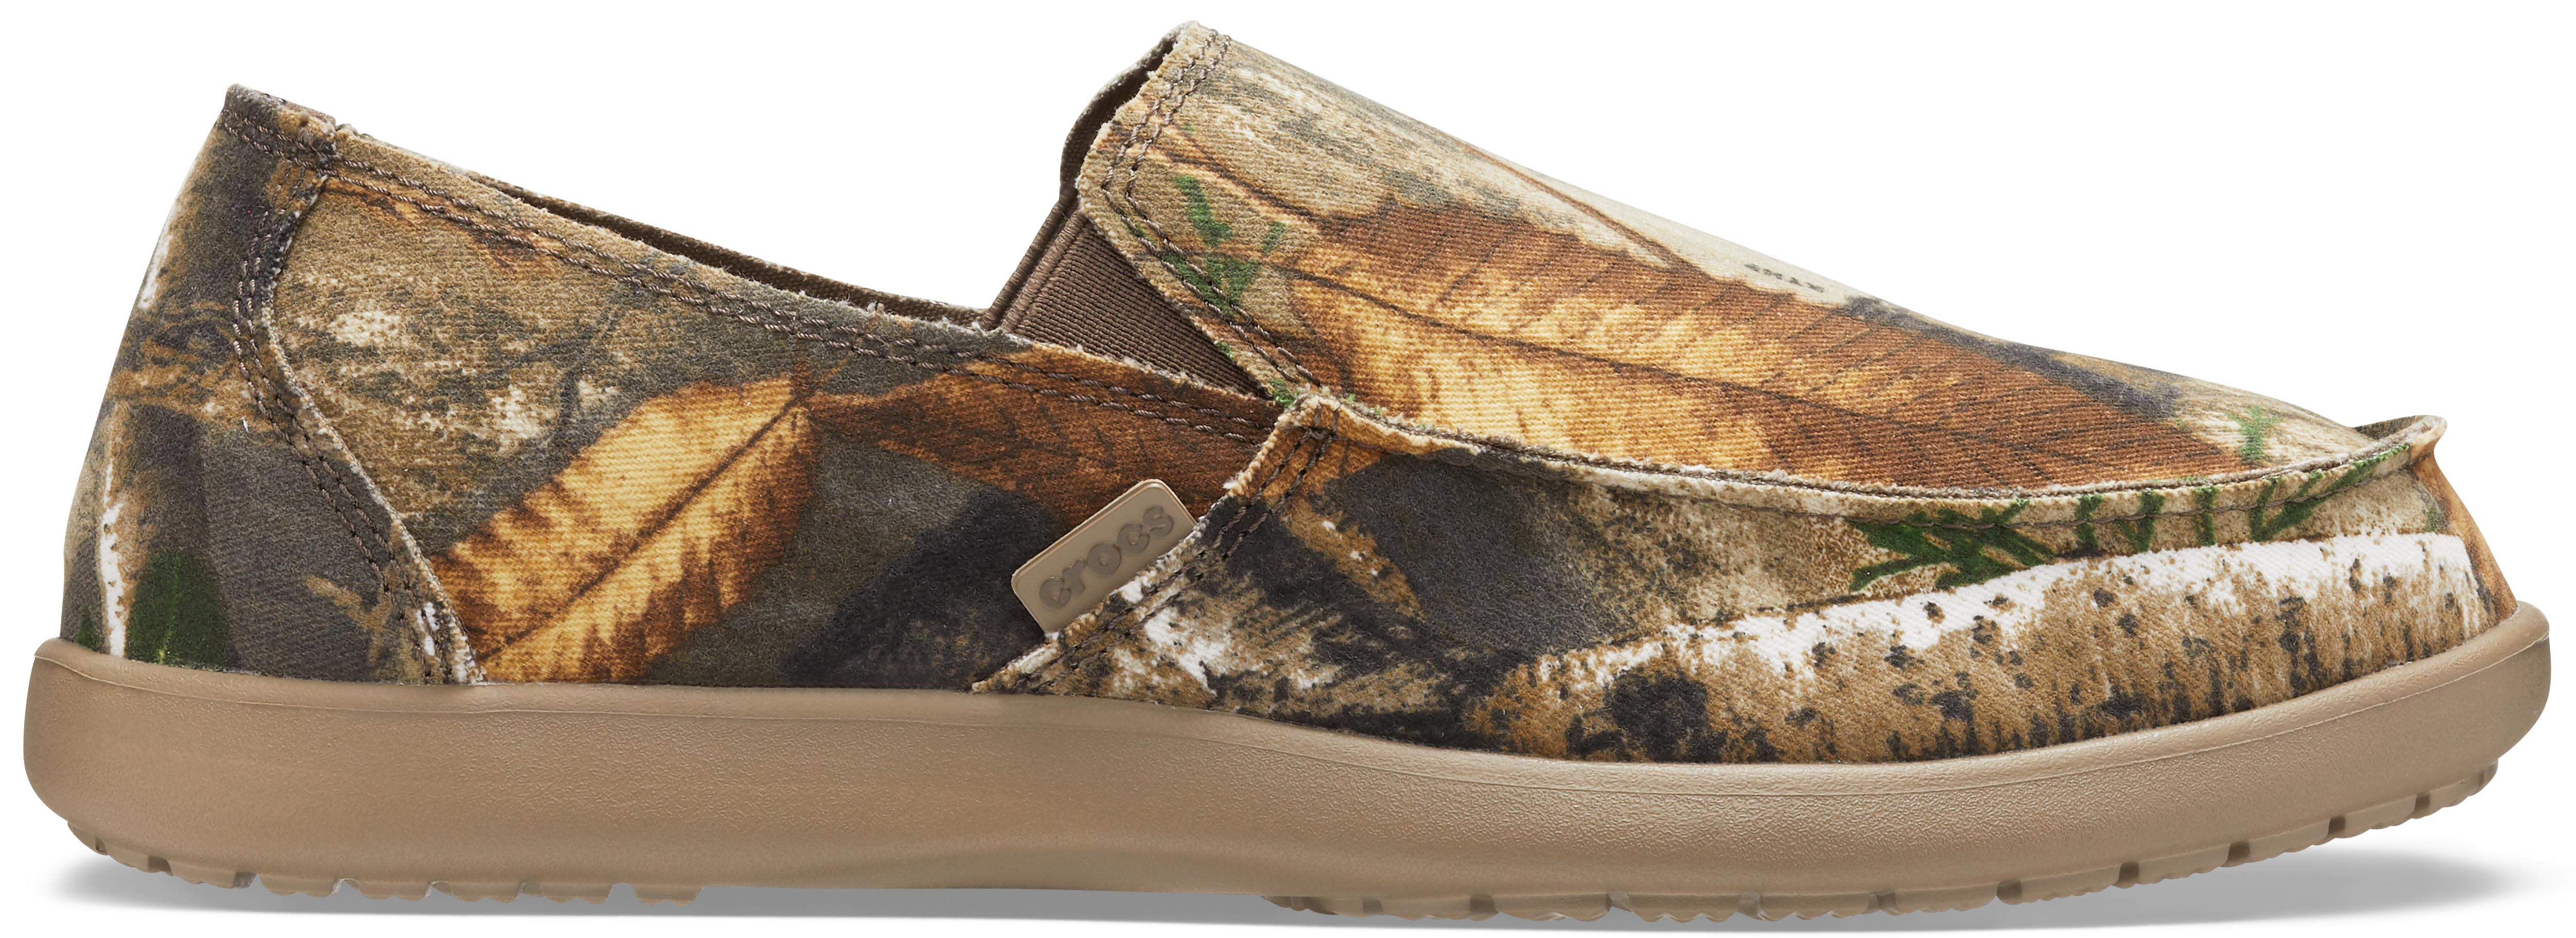 crocs men's canvas loafers